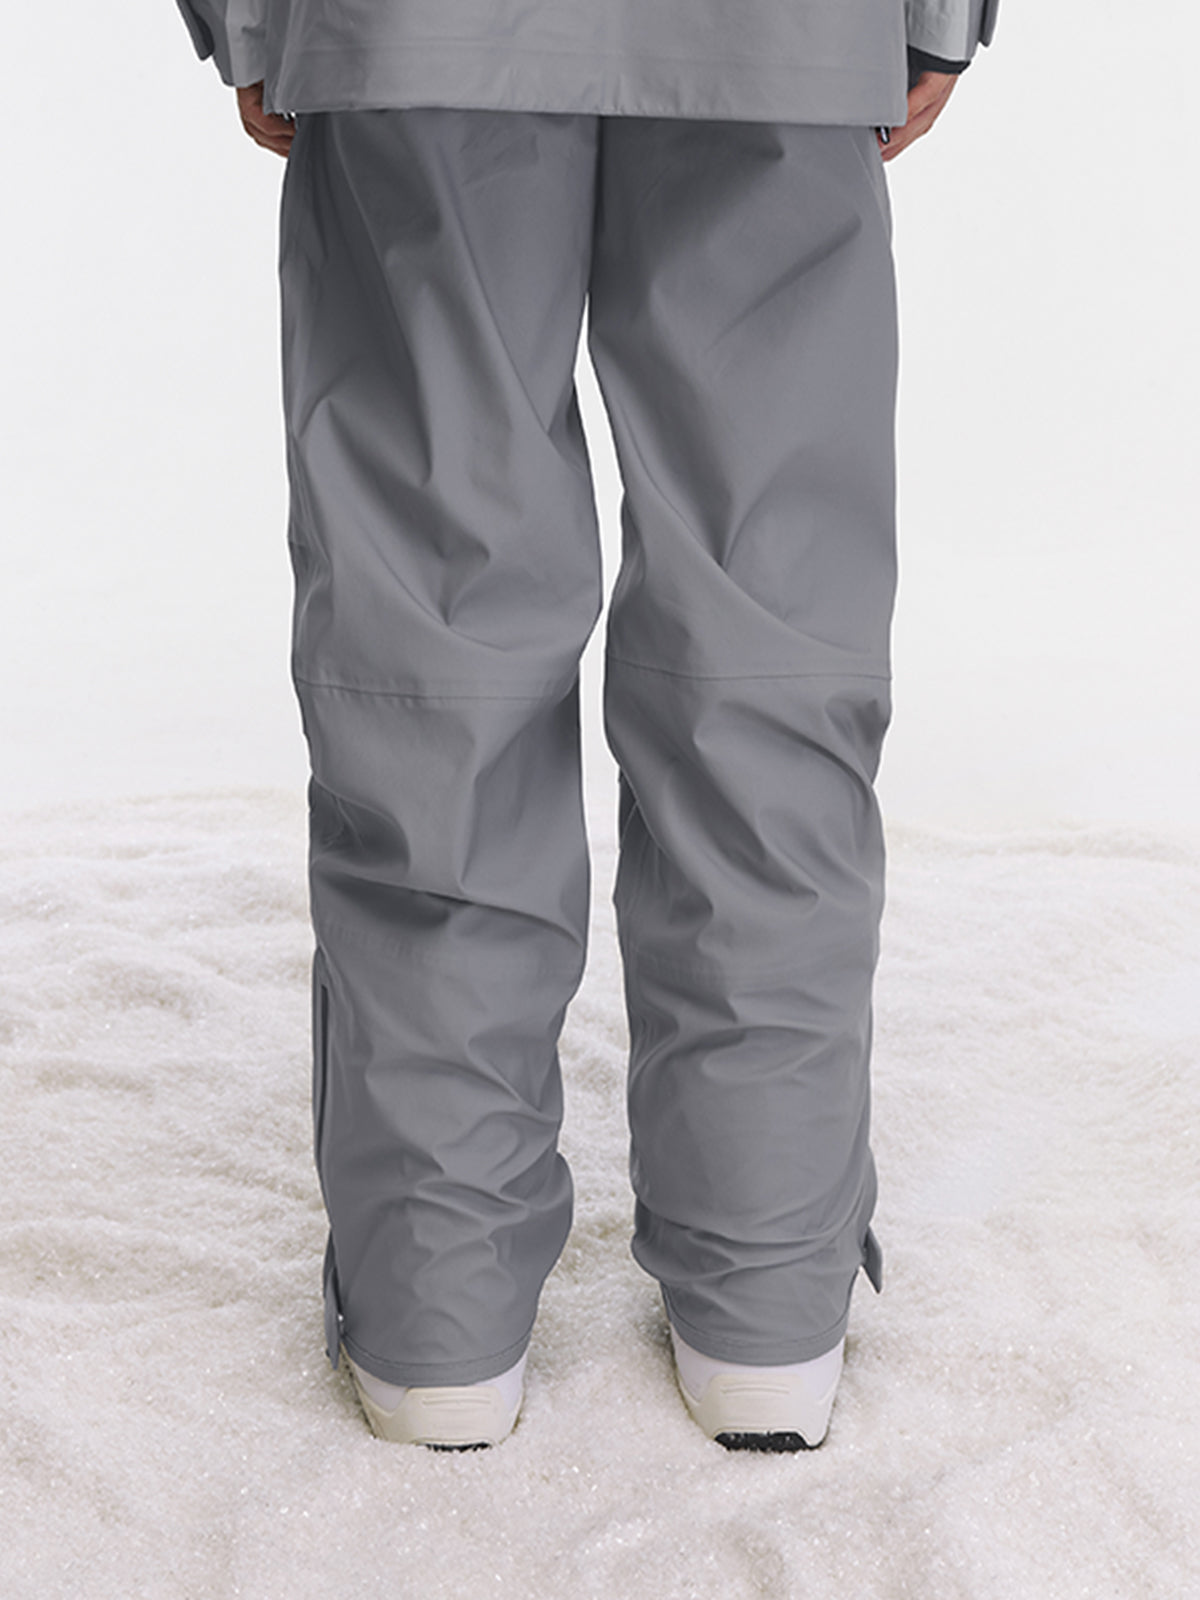 Nils snow pants Entrant dermizax fabric size 12 short - $110